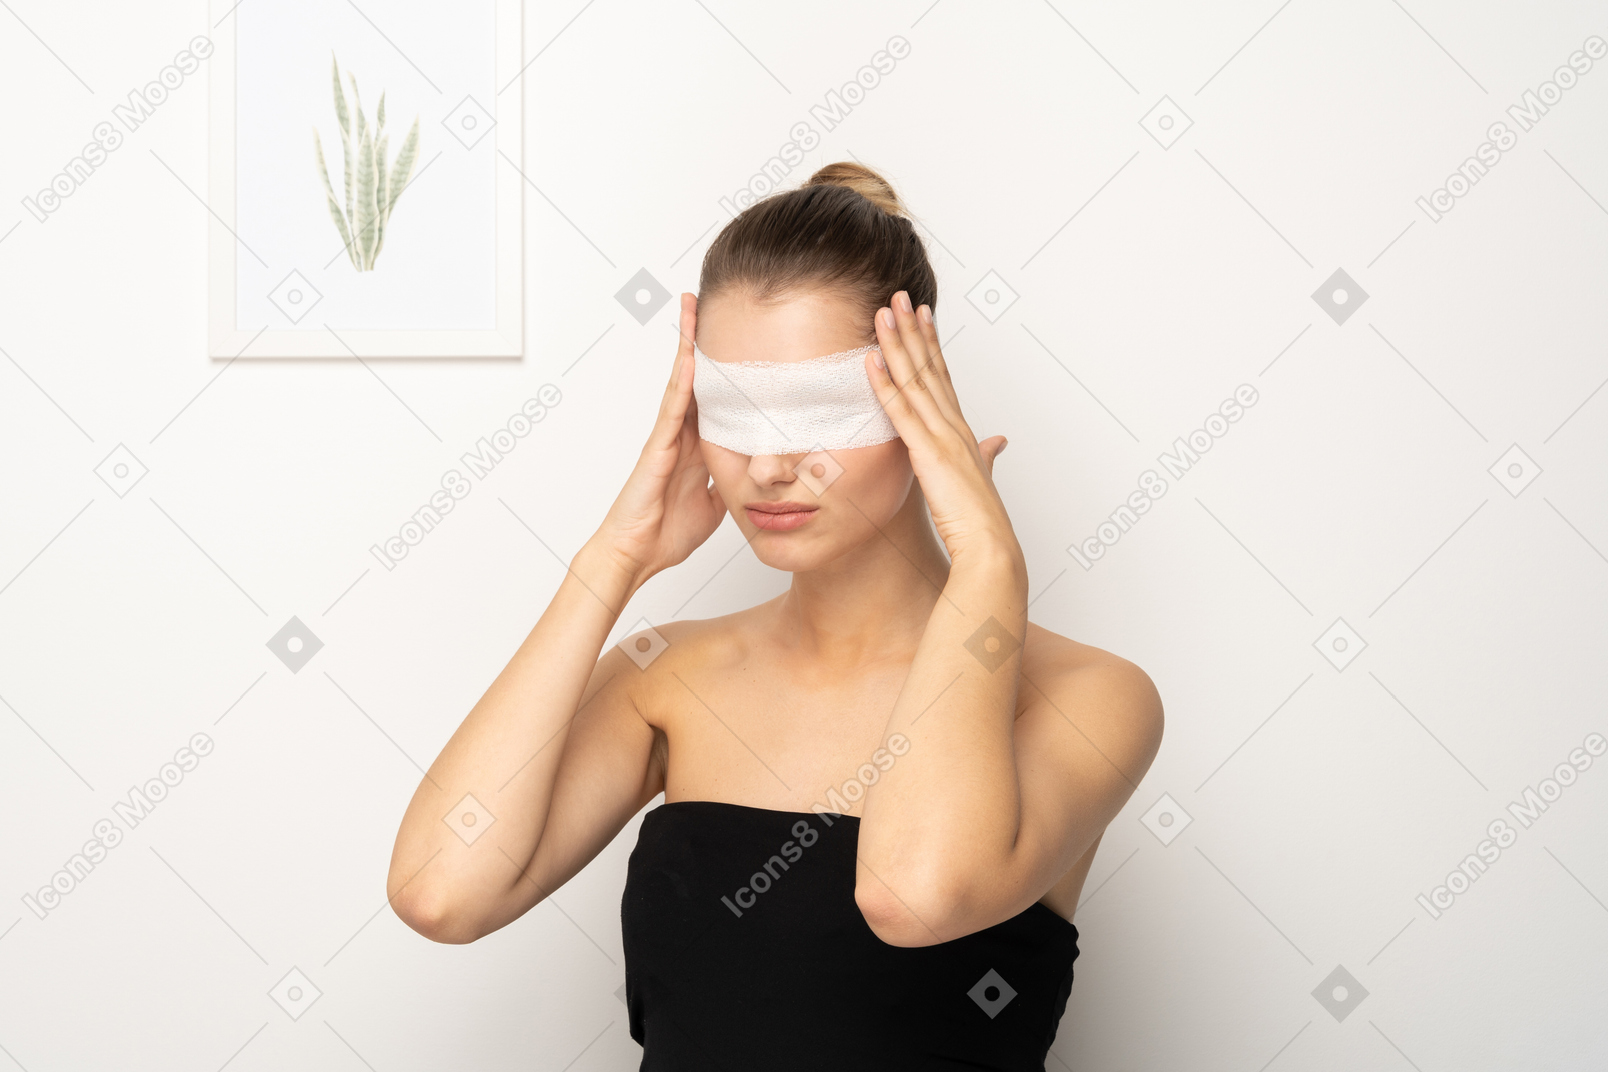 관자놀이를 만지고 있는 눈에 붕대를 감고 있는 젊은 여성